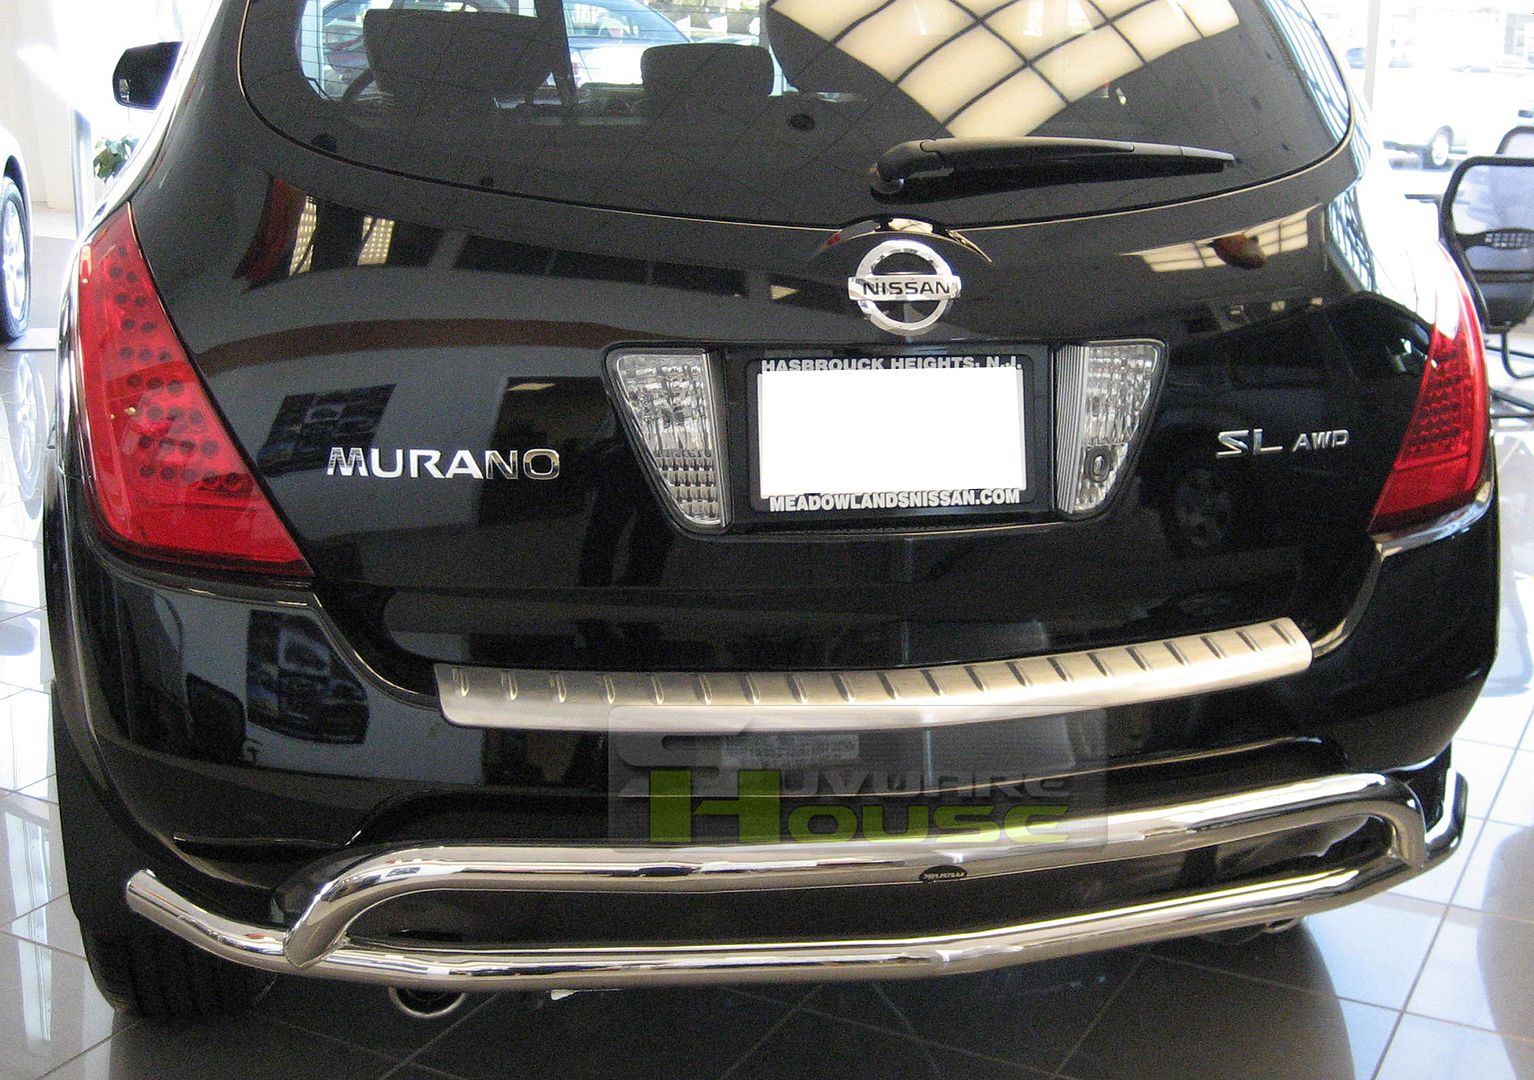 2007 Nissan murano rear bumper cover #4